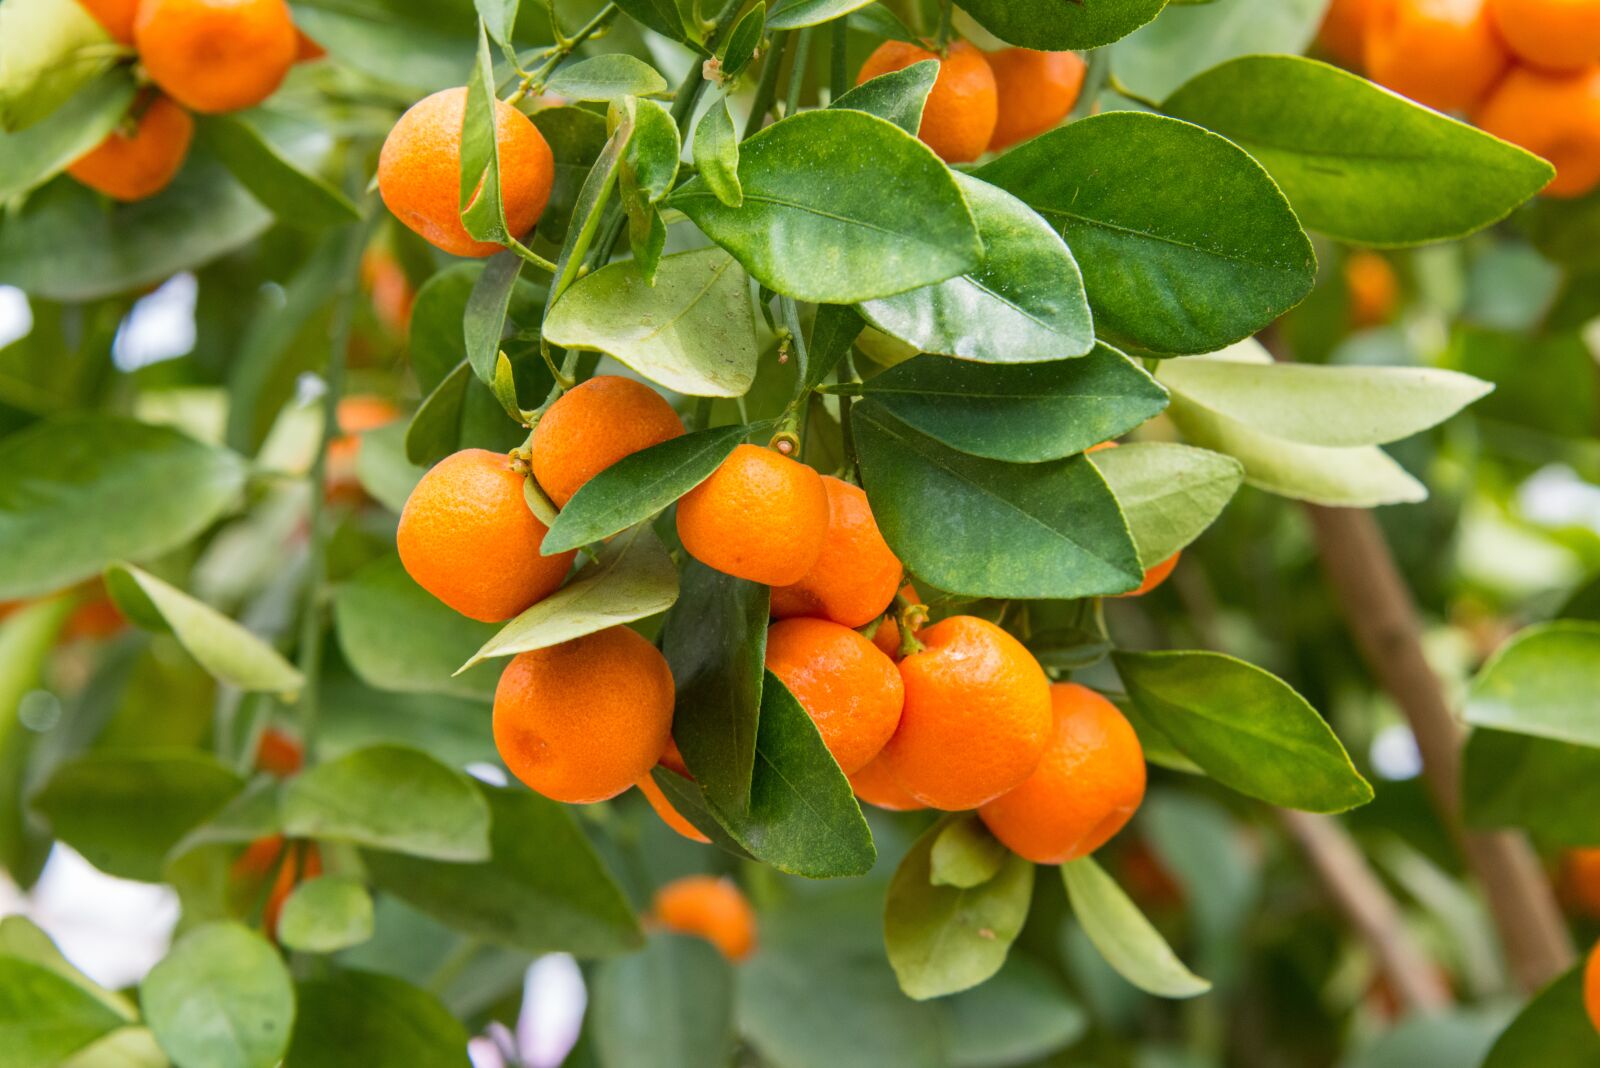 Nikon D800 sample photo. Oranges, fruits, citrus photography